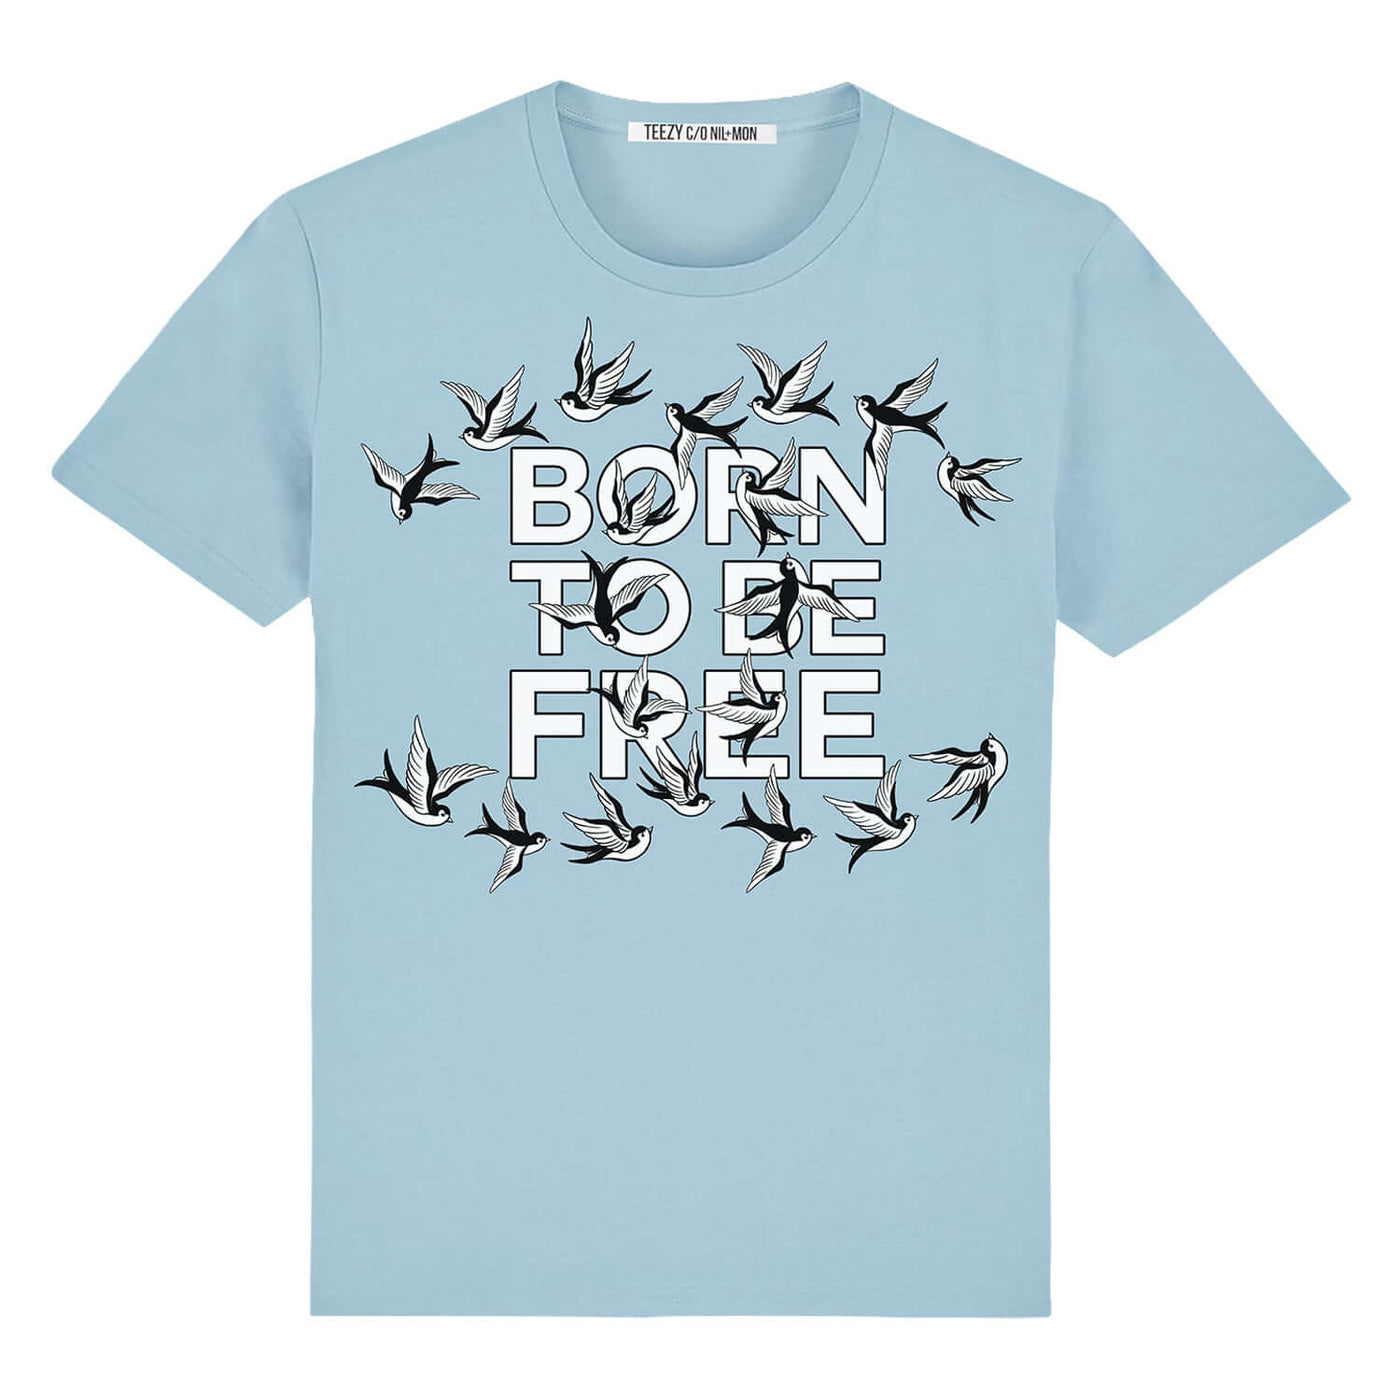 T-Shirt "TZ Free White" - light blue